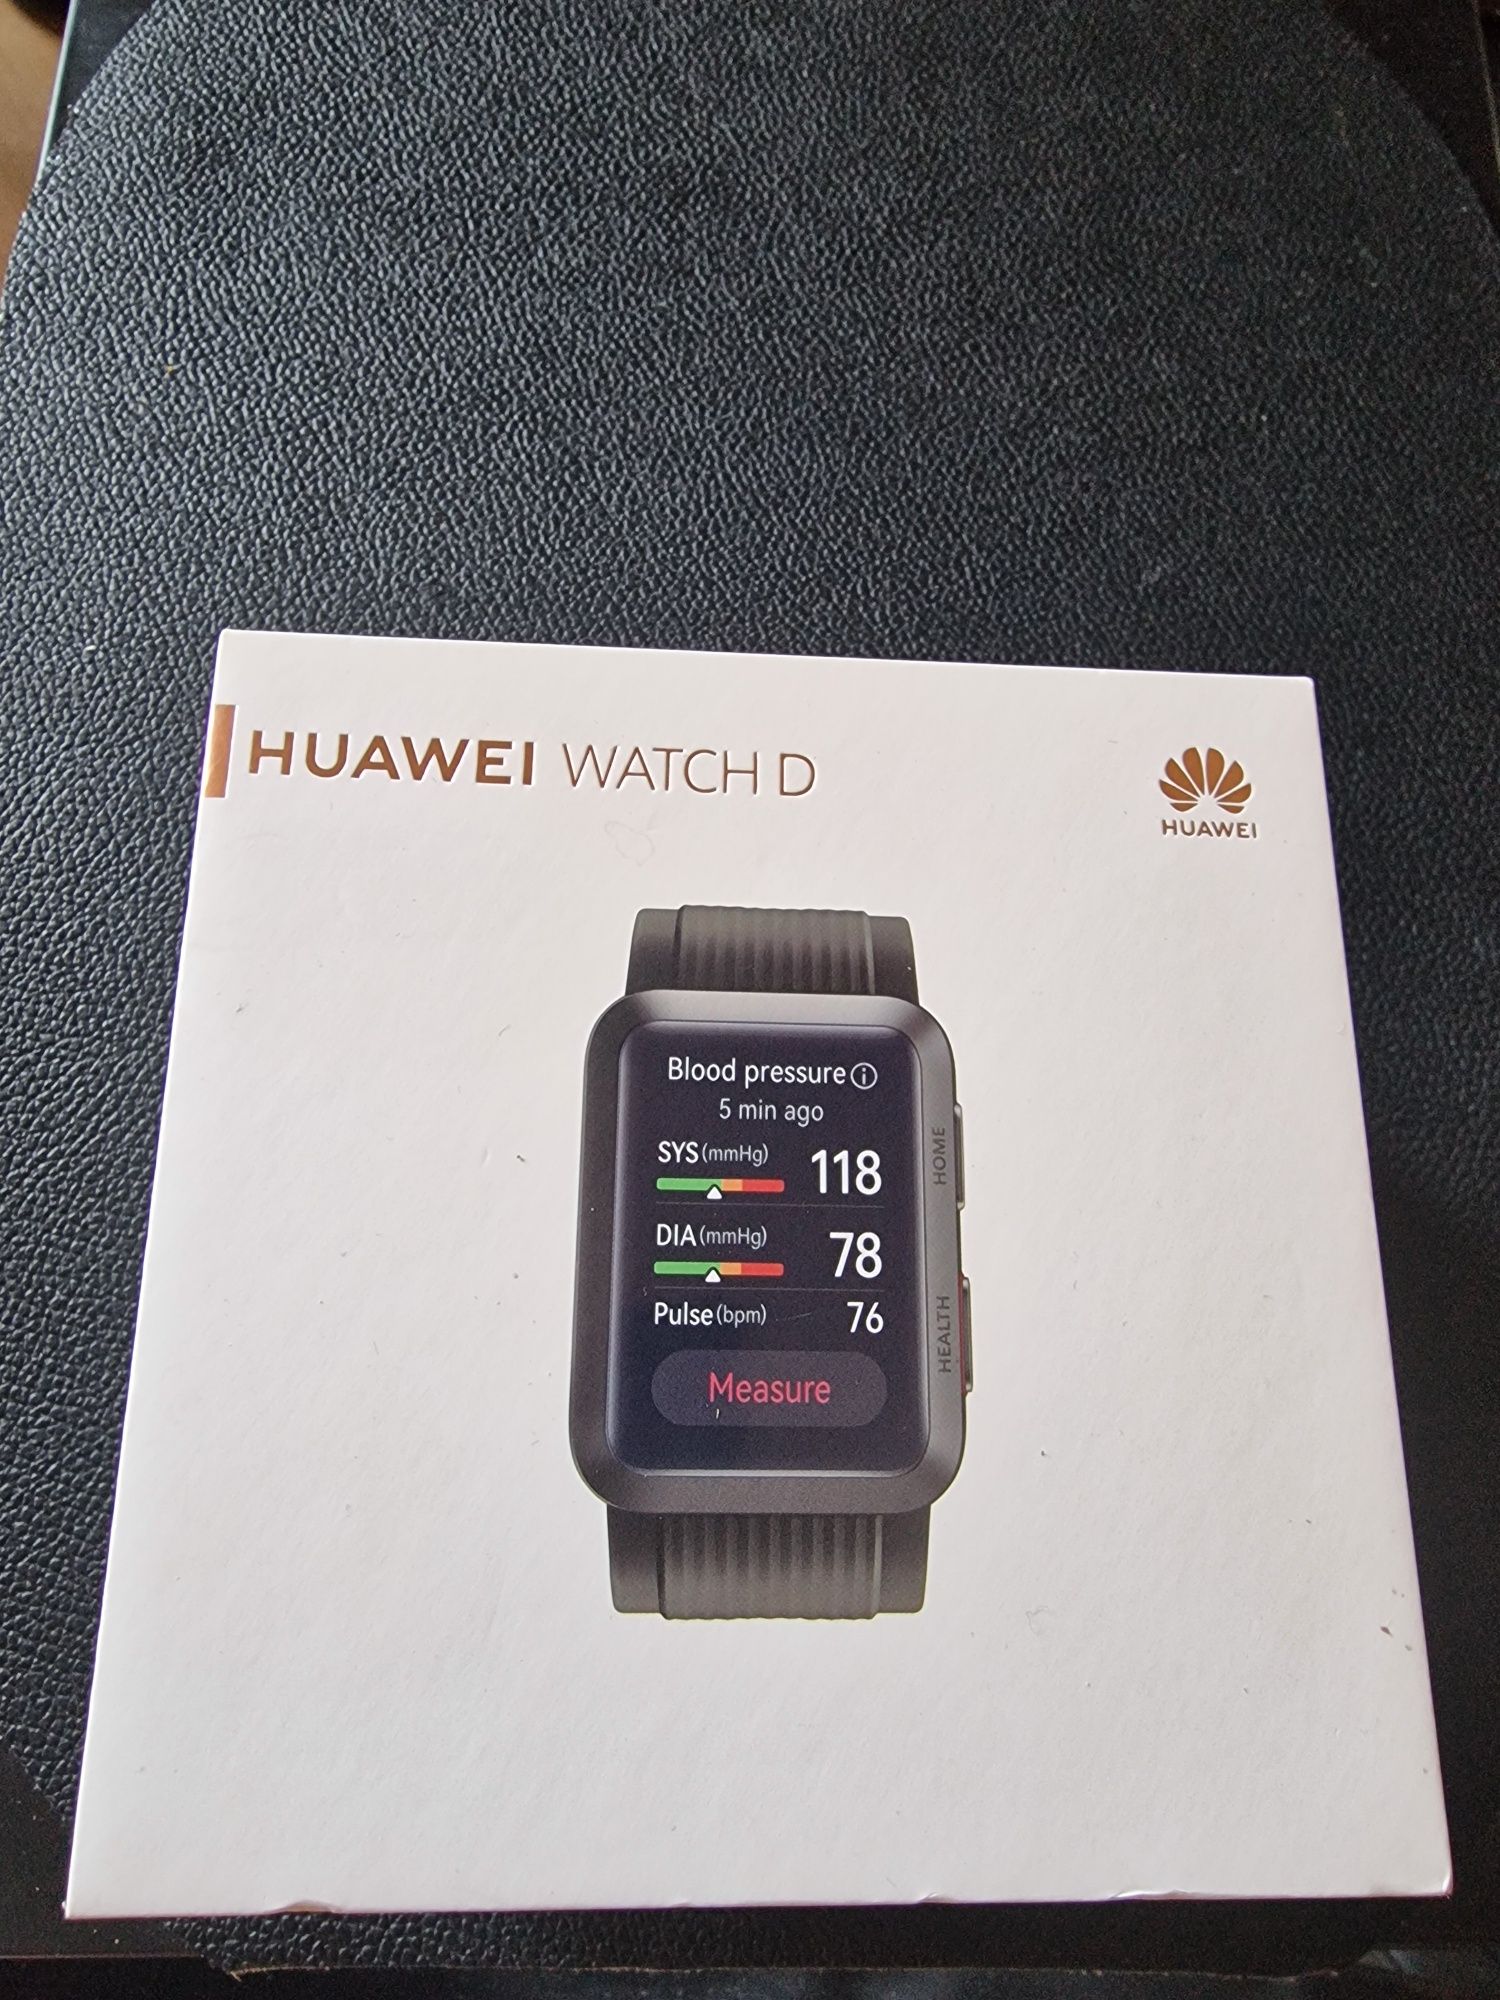 Huawei smartwatch D